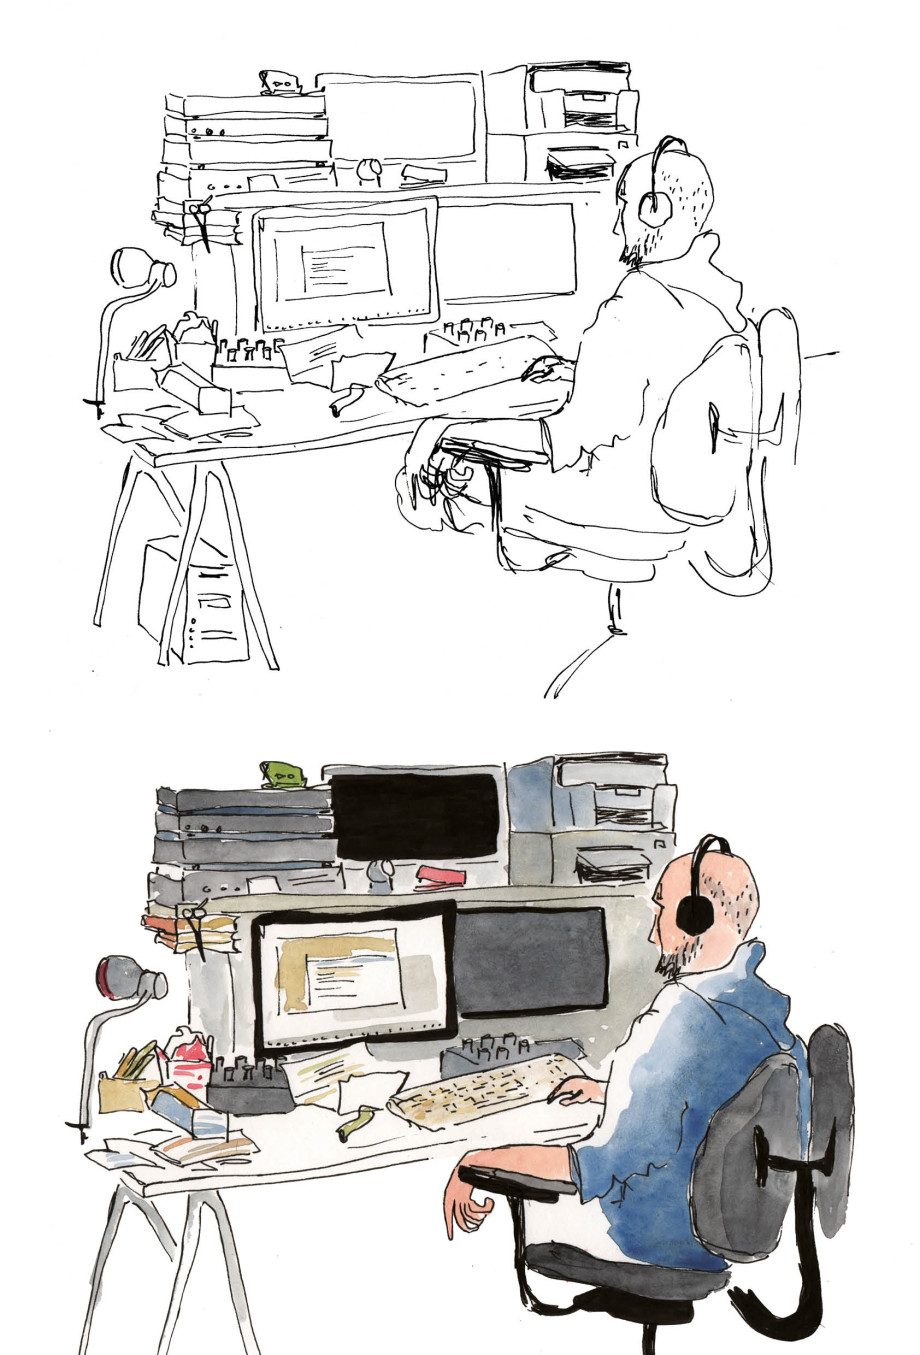 Zeichnung eines Interviewpartners an seinem Schreibtisch. Oben unkolorierte Skizze, unten farbige fertige Illustration.